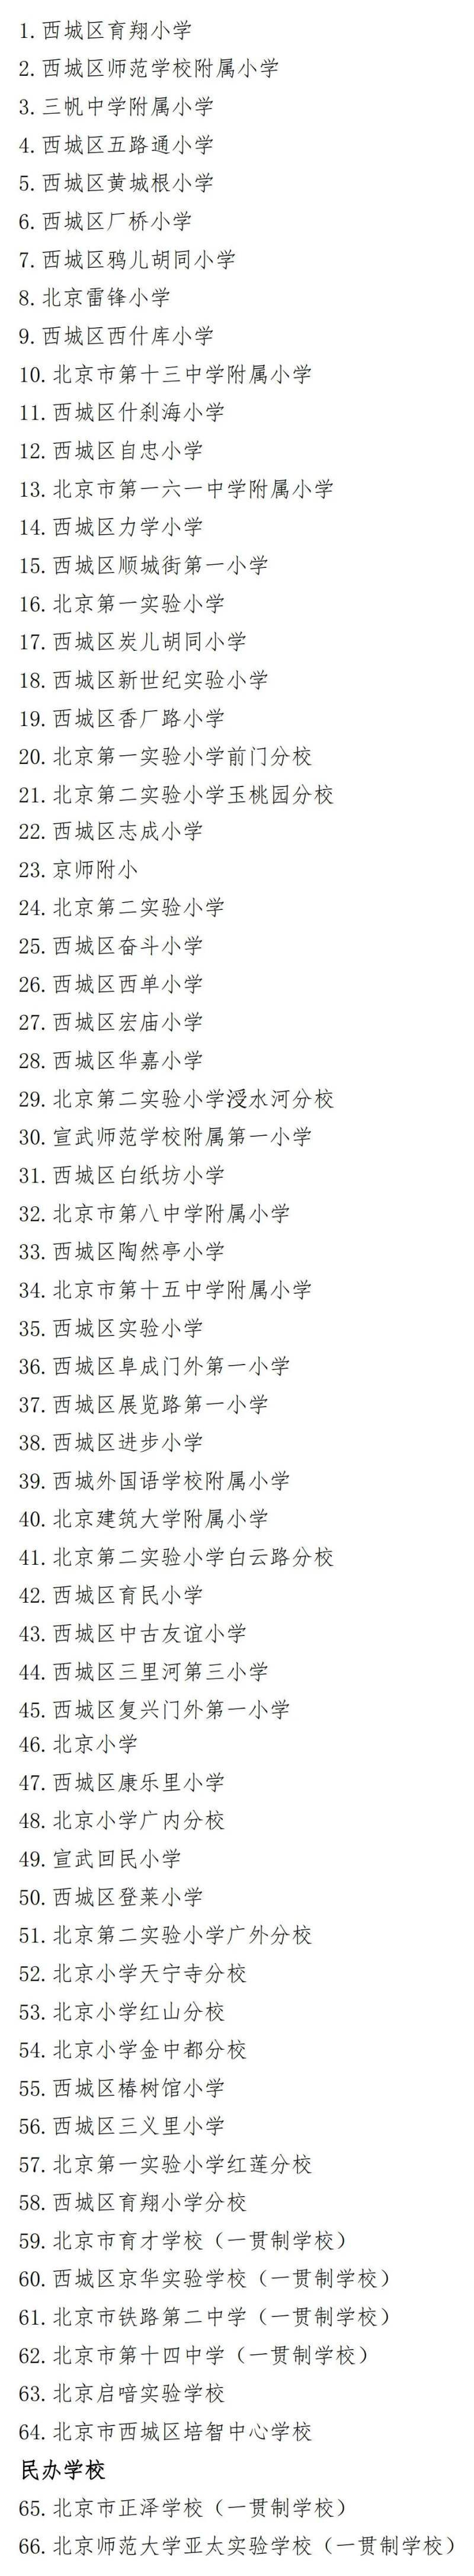 北京西城区2023年中小学名单、学区划片公布